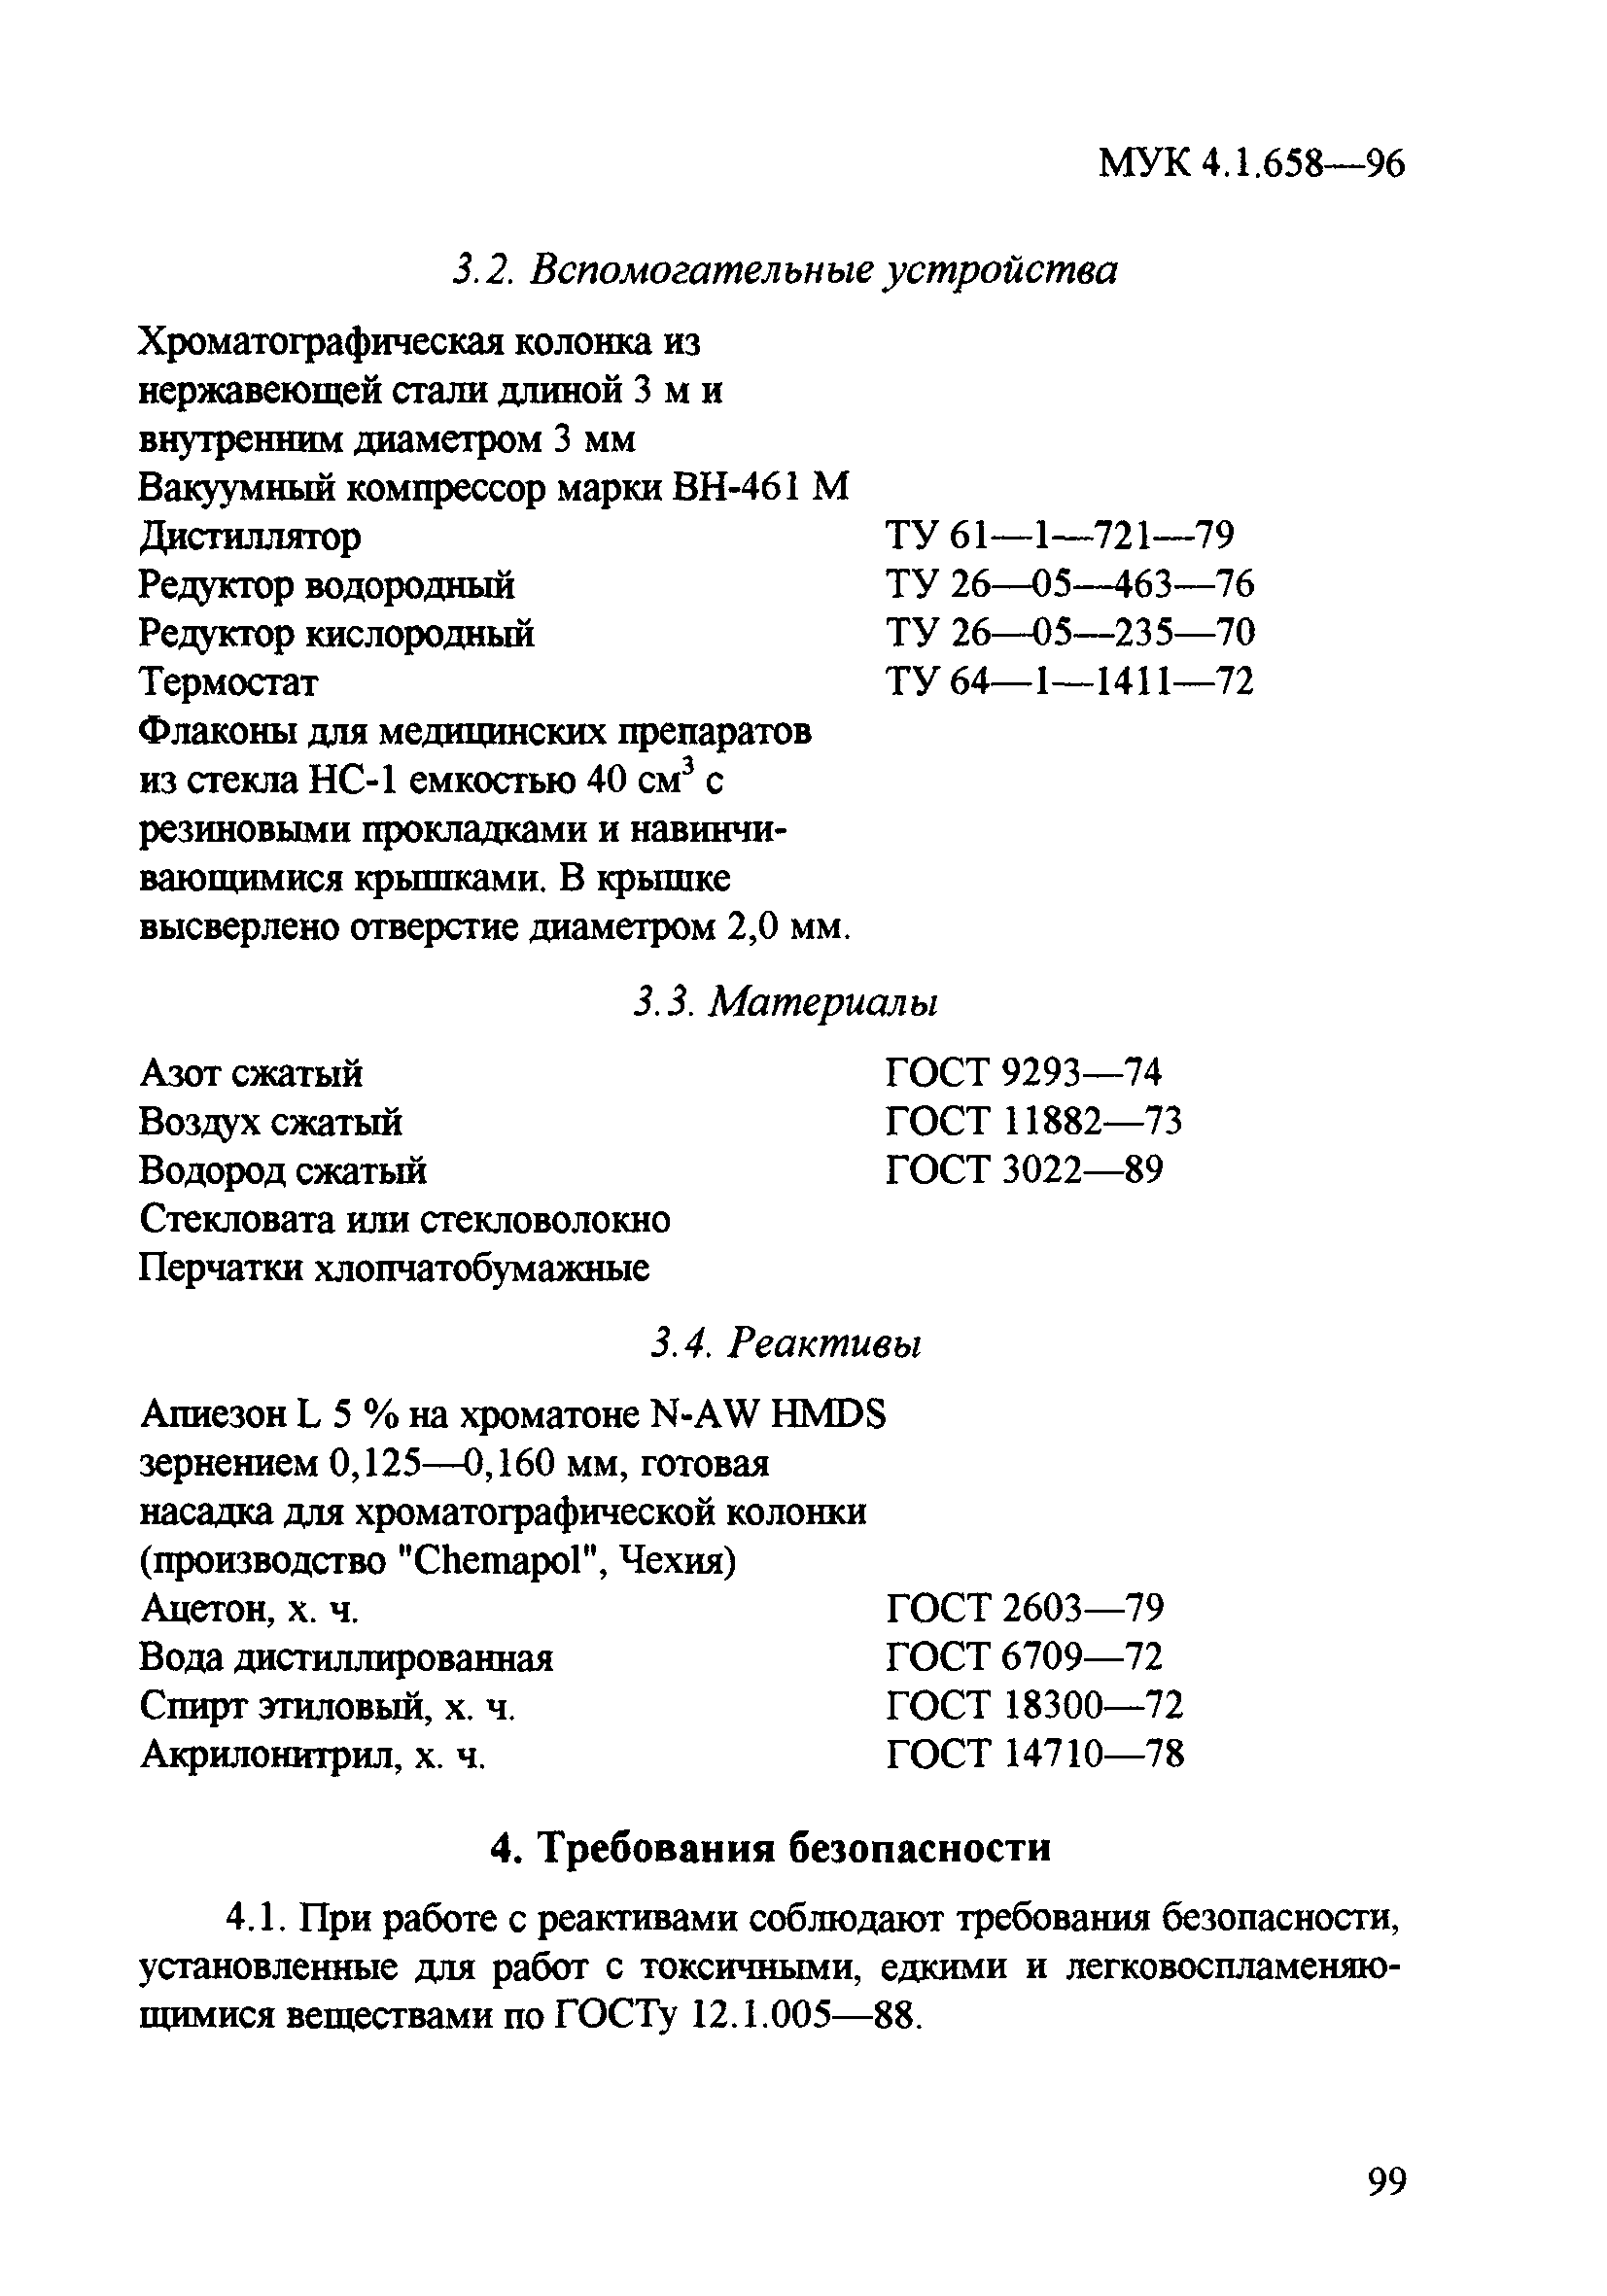 МУК 4.1.658-96